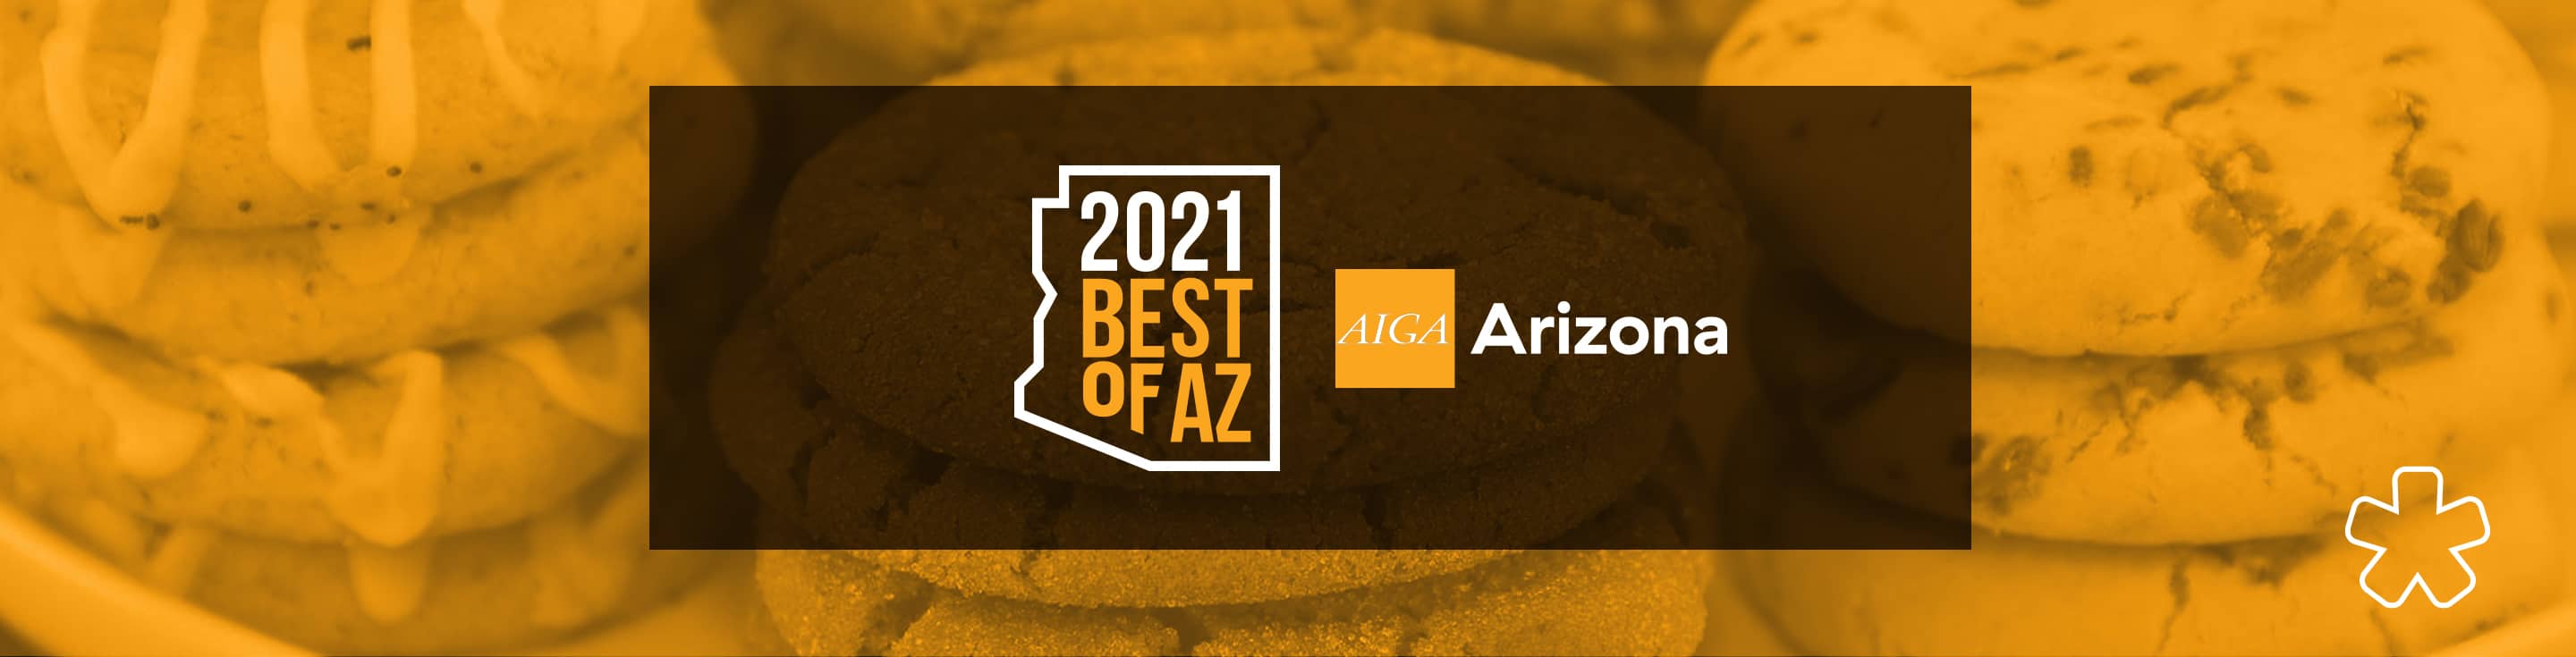 AIGA-AZ Best Of 2021